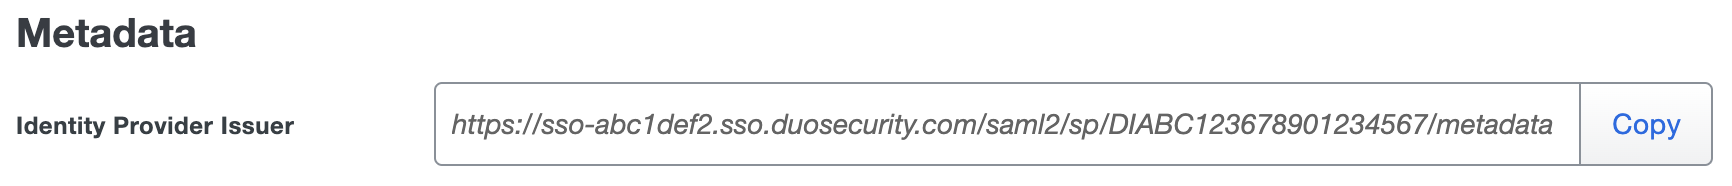 Duo Palo Alto Prisma Identity Provider Issuer URL